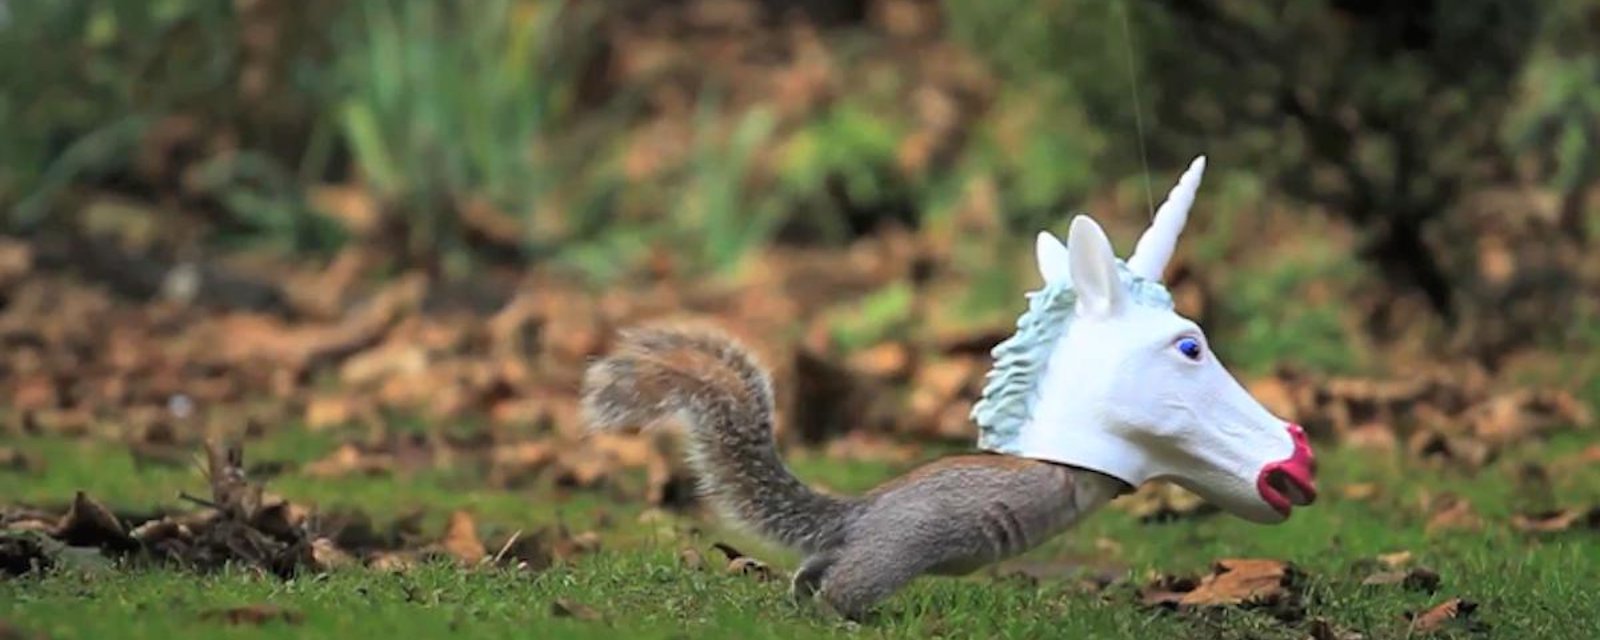 Un gadget un peu inutile mais hilarant: une mangeoire pour écureuils en tête de licorne!